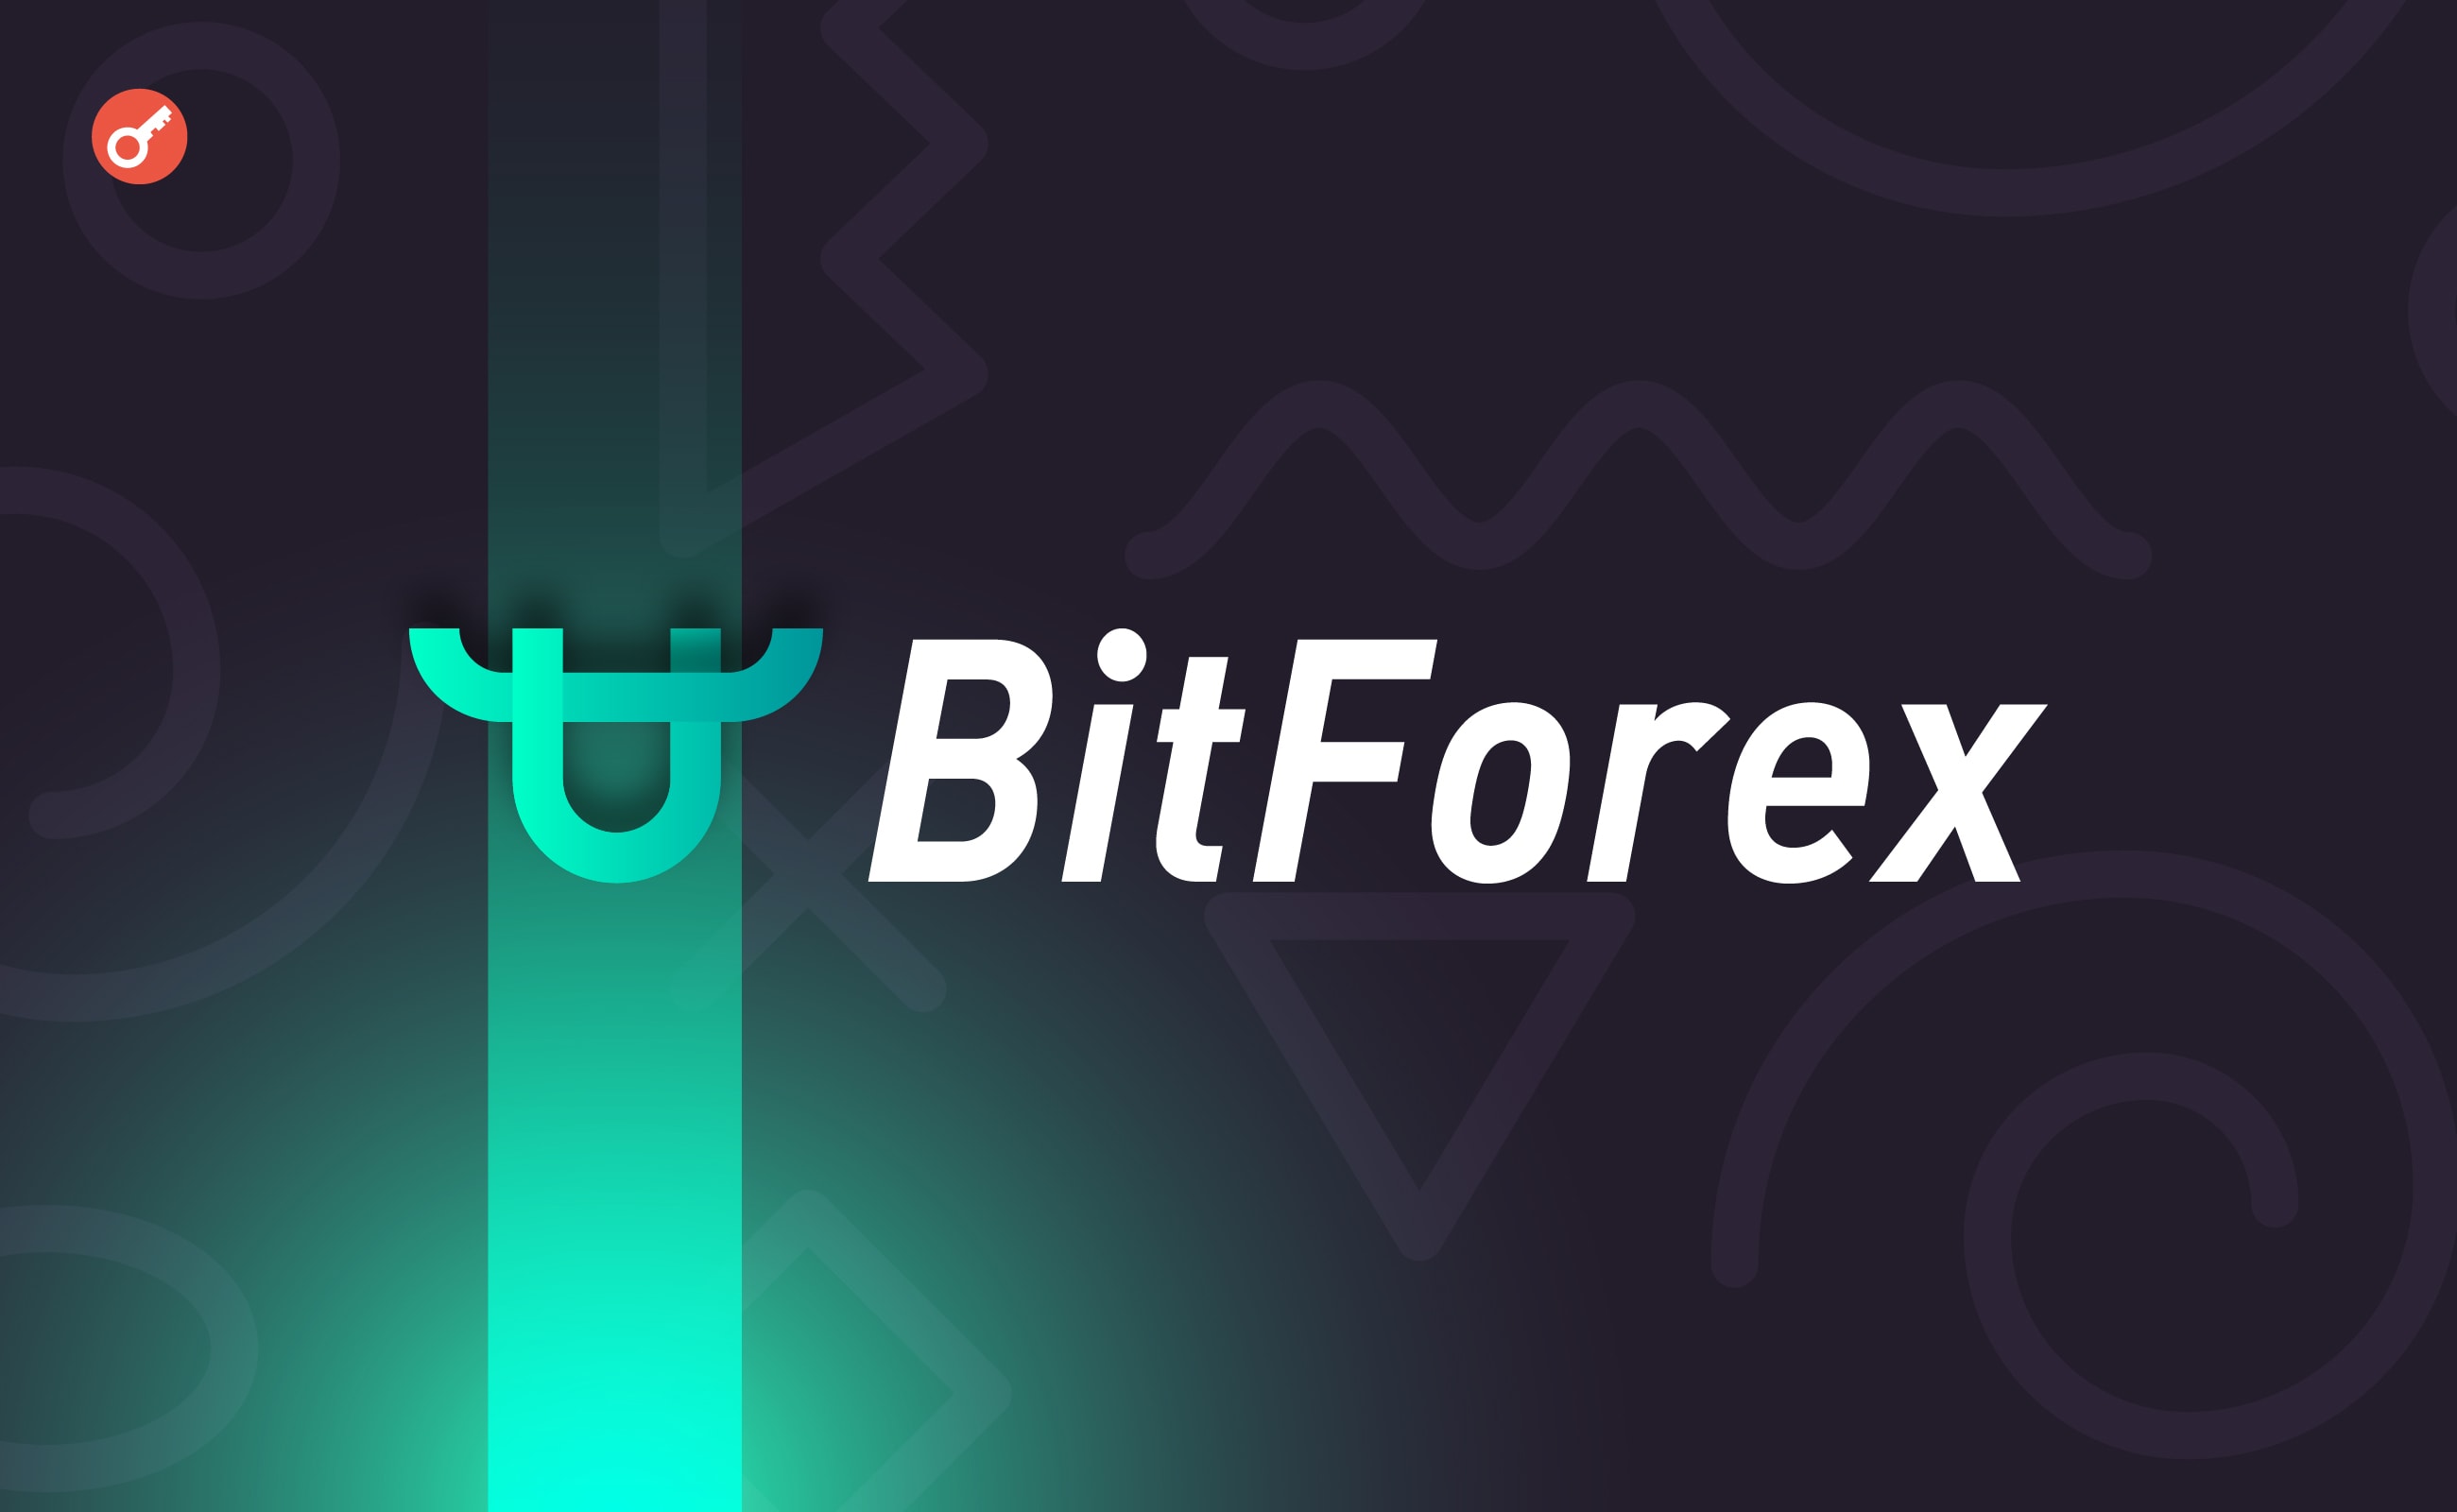 Експерт вказав на можливість злому біржі BitForex. Головний колаж новини.